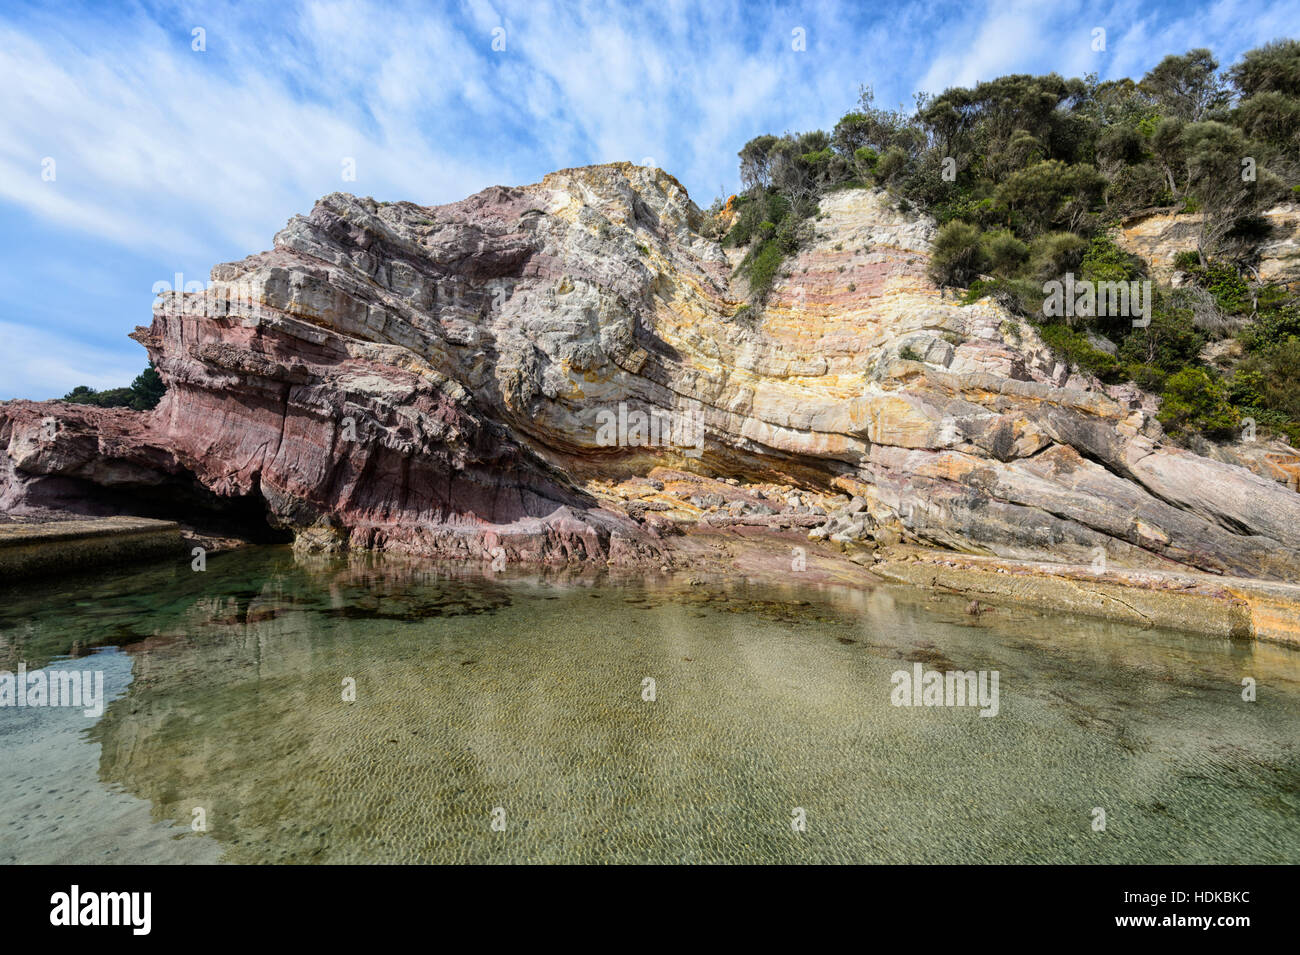 Eden Rock extérieure à côté de formations de roches sédimentaires paléozoïques de la partie Rumes complexe d'accrétion, Côte Sud, New South Wales, NSW, Australie Banque D'Images